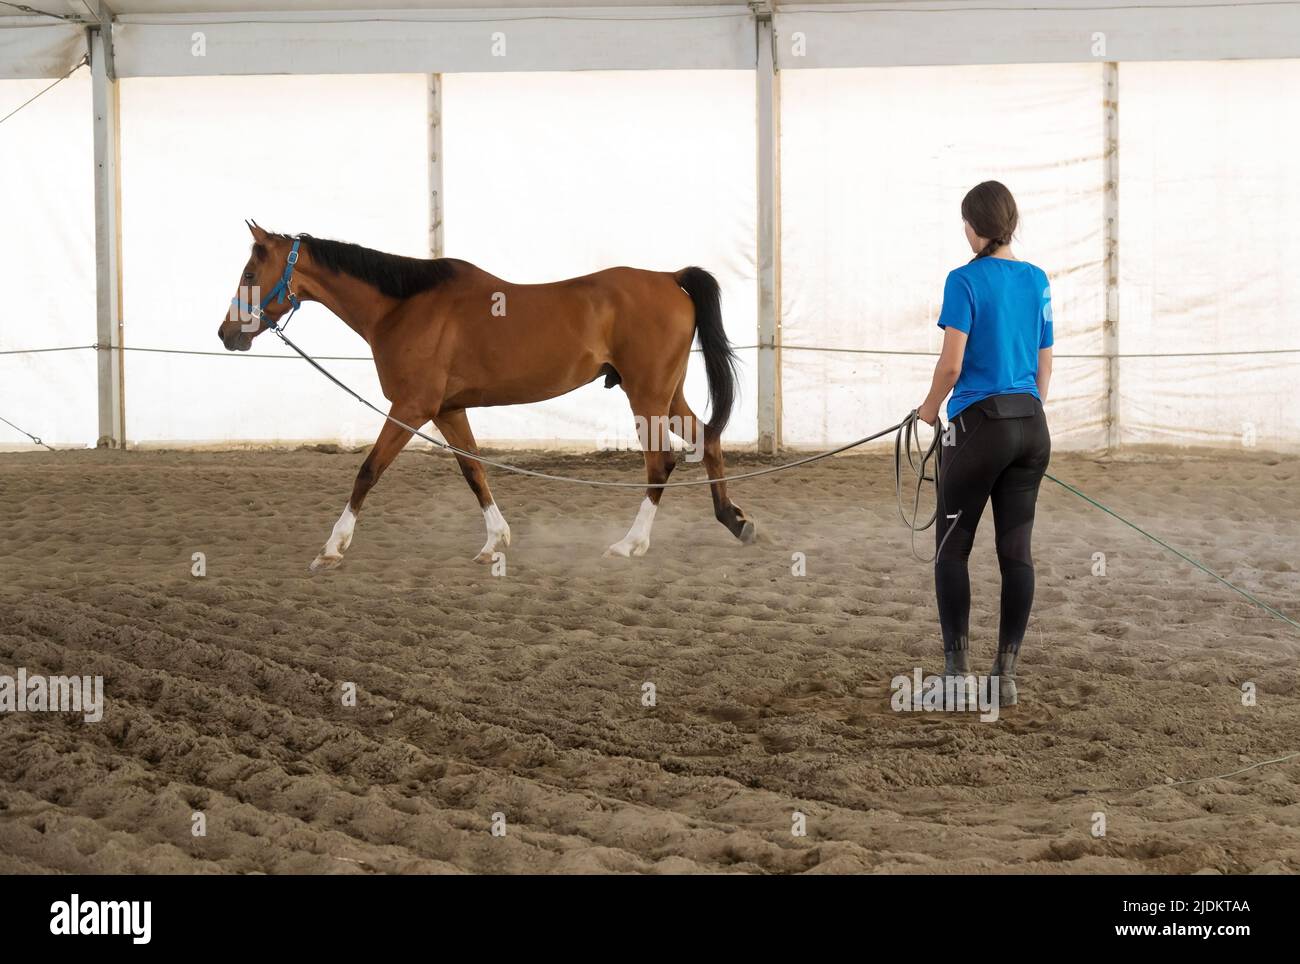 Une jeune femme qui fait de son cheval une longueur d'avance dans une arène couverte la mettant à l'épreuve lorsqu'elle fait le tour Banque D'Images